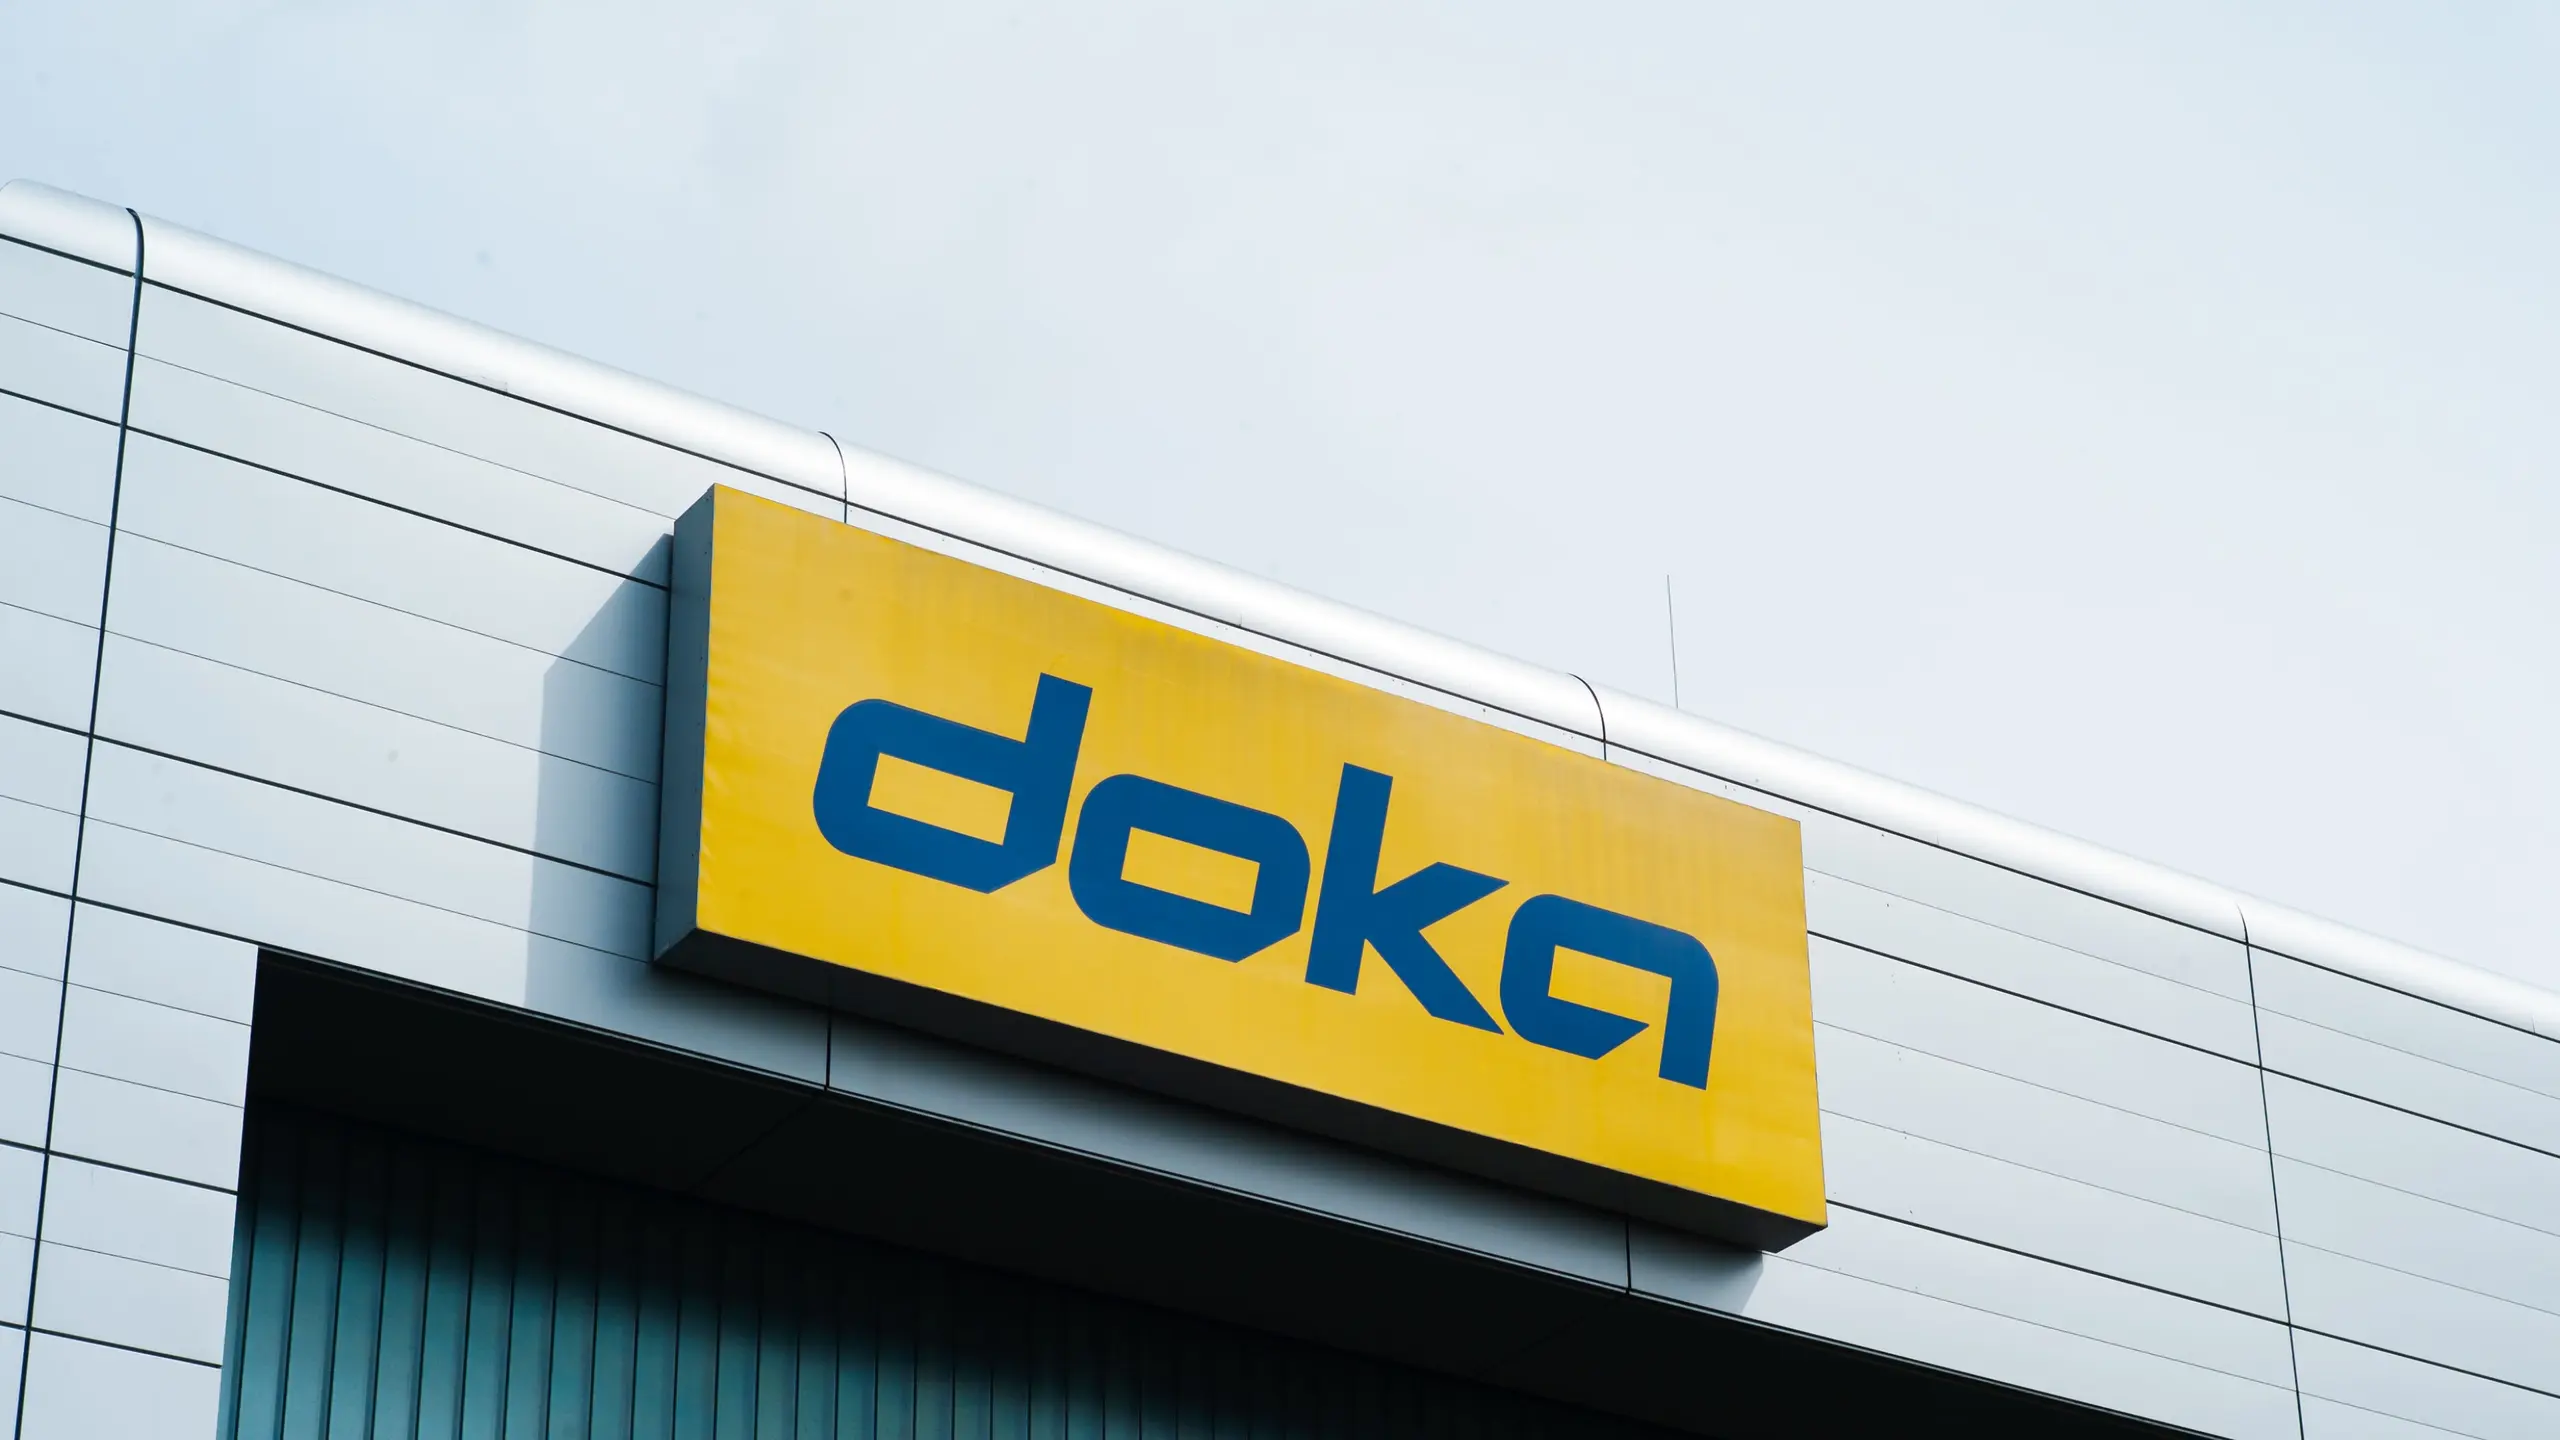 Doka ist ein weltweit tätiges und führendes Unternehmen im Bereich der Schalungstechnik und des Gerüstbaus mit Zentrale in Amstetten, Niederösterreich.